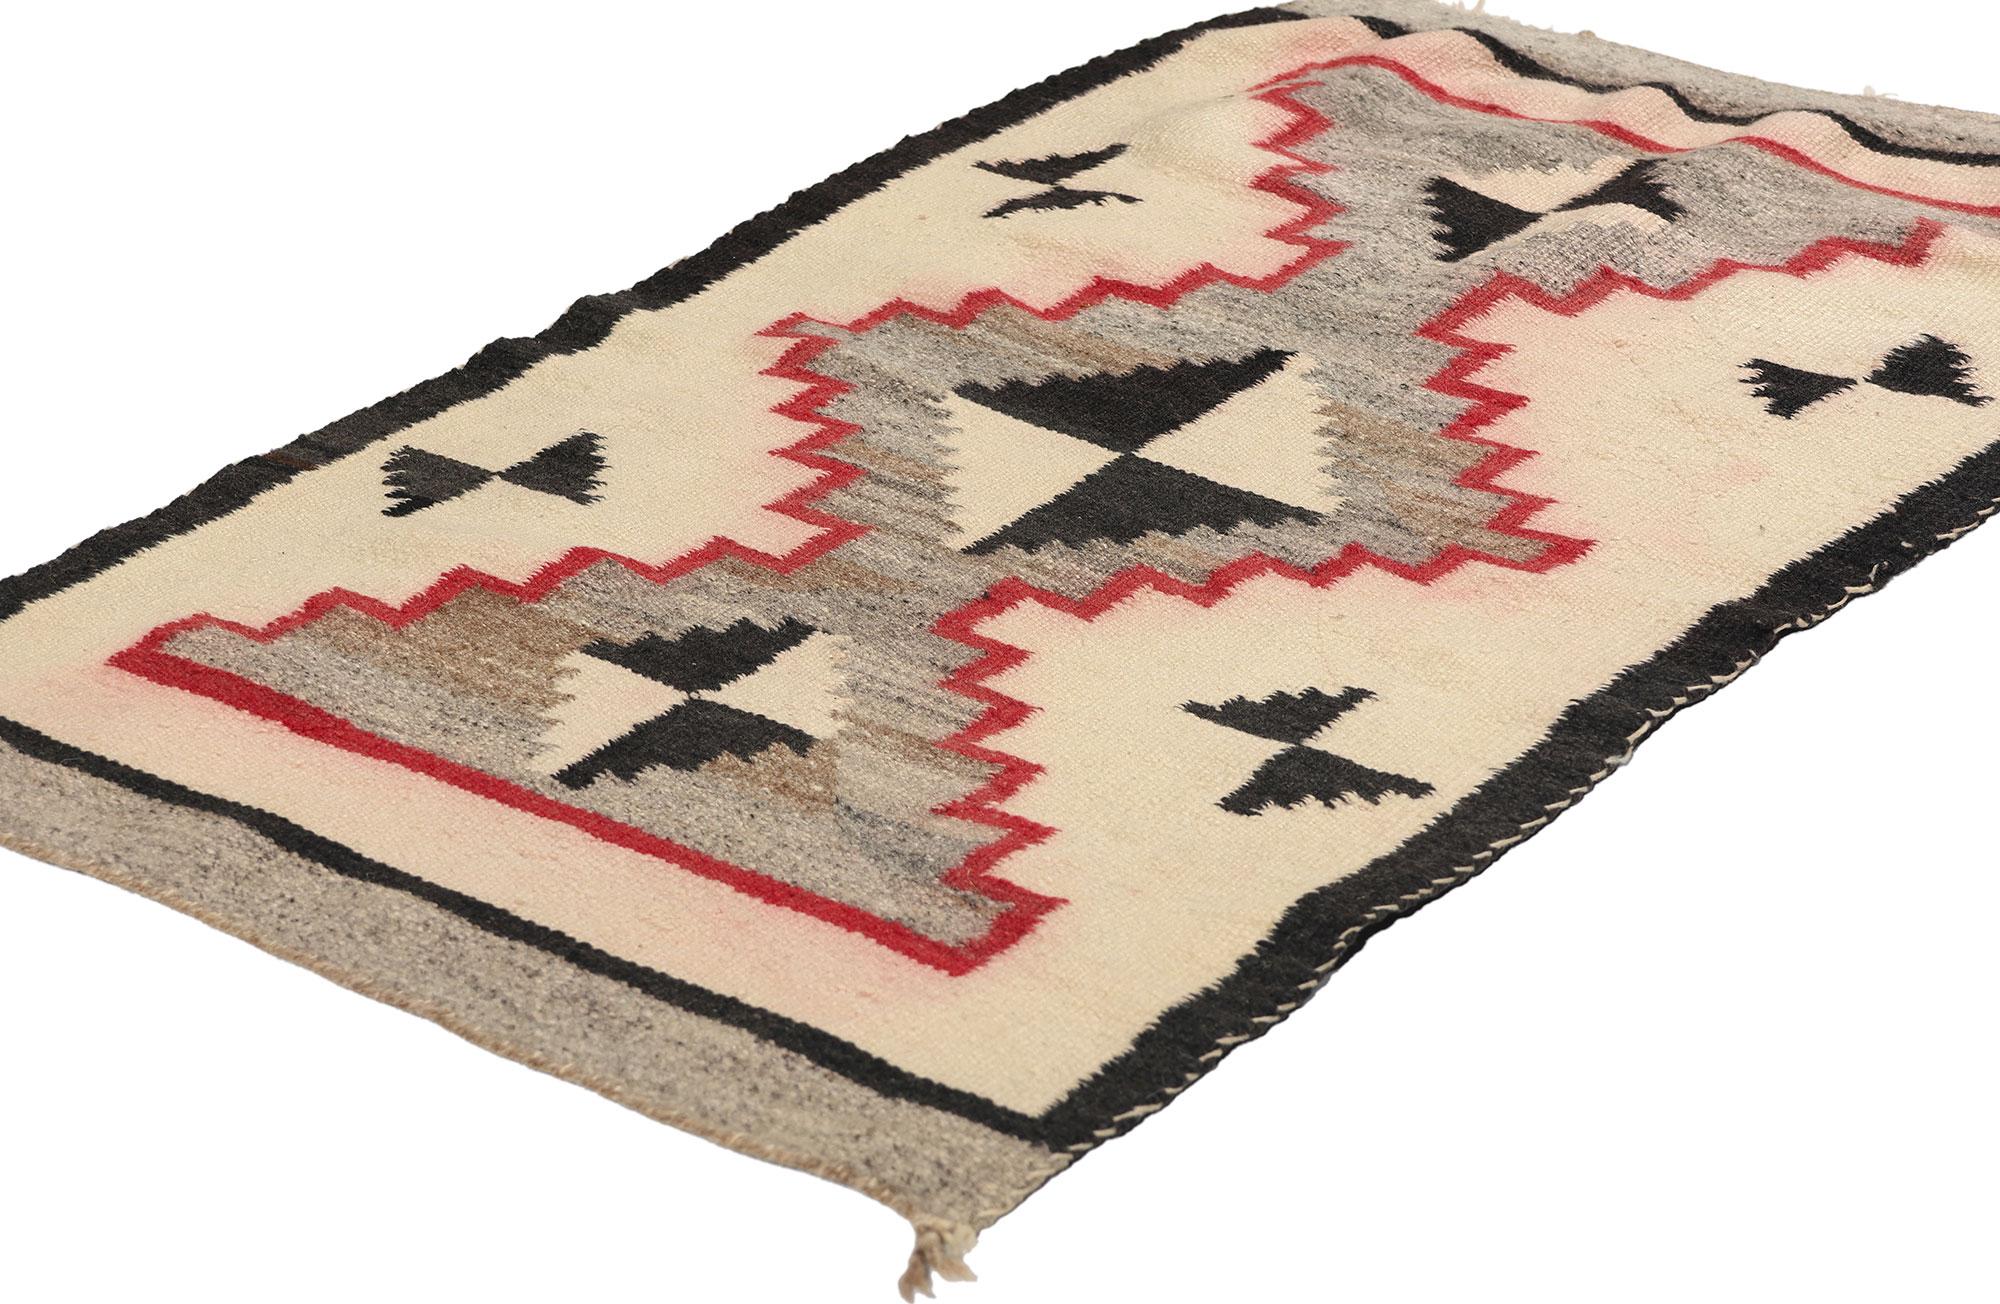 78752 Tapis Navajo Transitionnel Antique, 02'01 x 03'05. Les tapis Navajo de transition, tissés à la fin du XIXe siècle et au début du XXe siècle, marquent une période de changement culturel pour le peuple Navajo, influencé par un contact accru avec